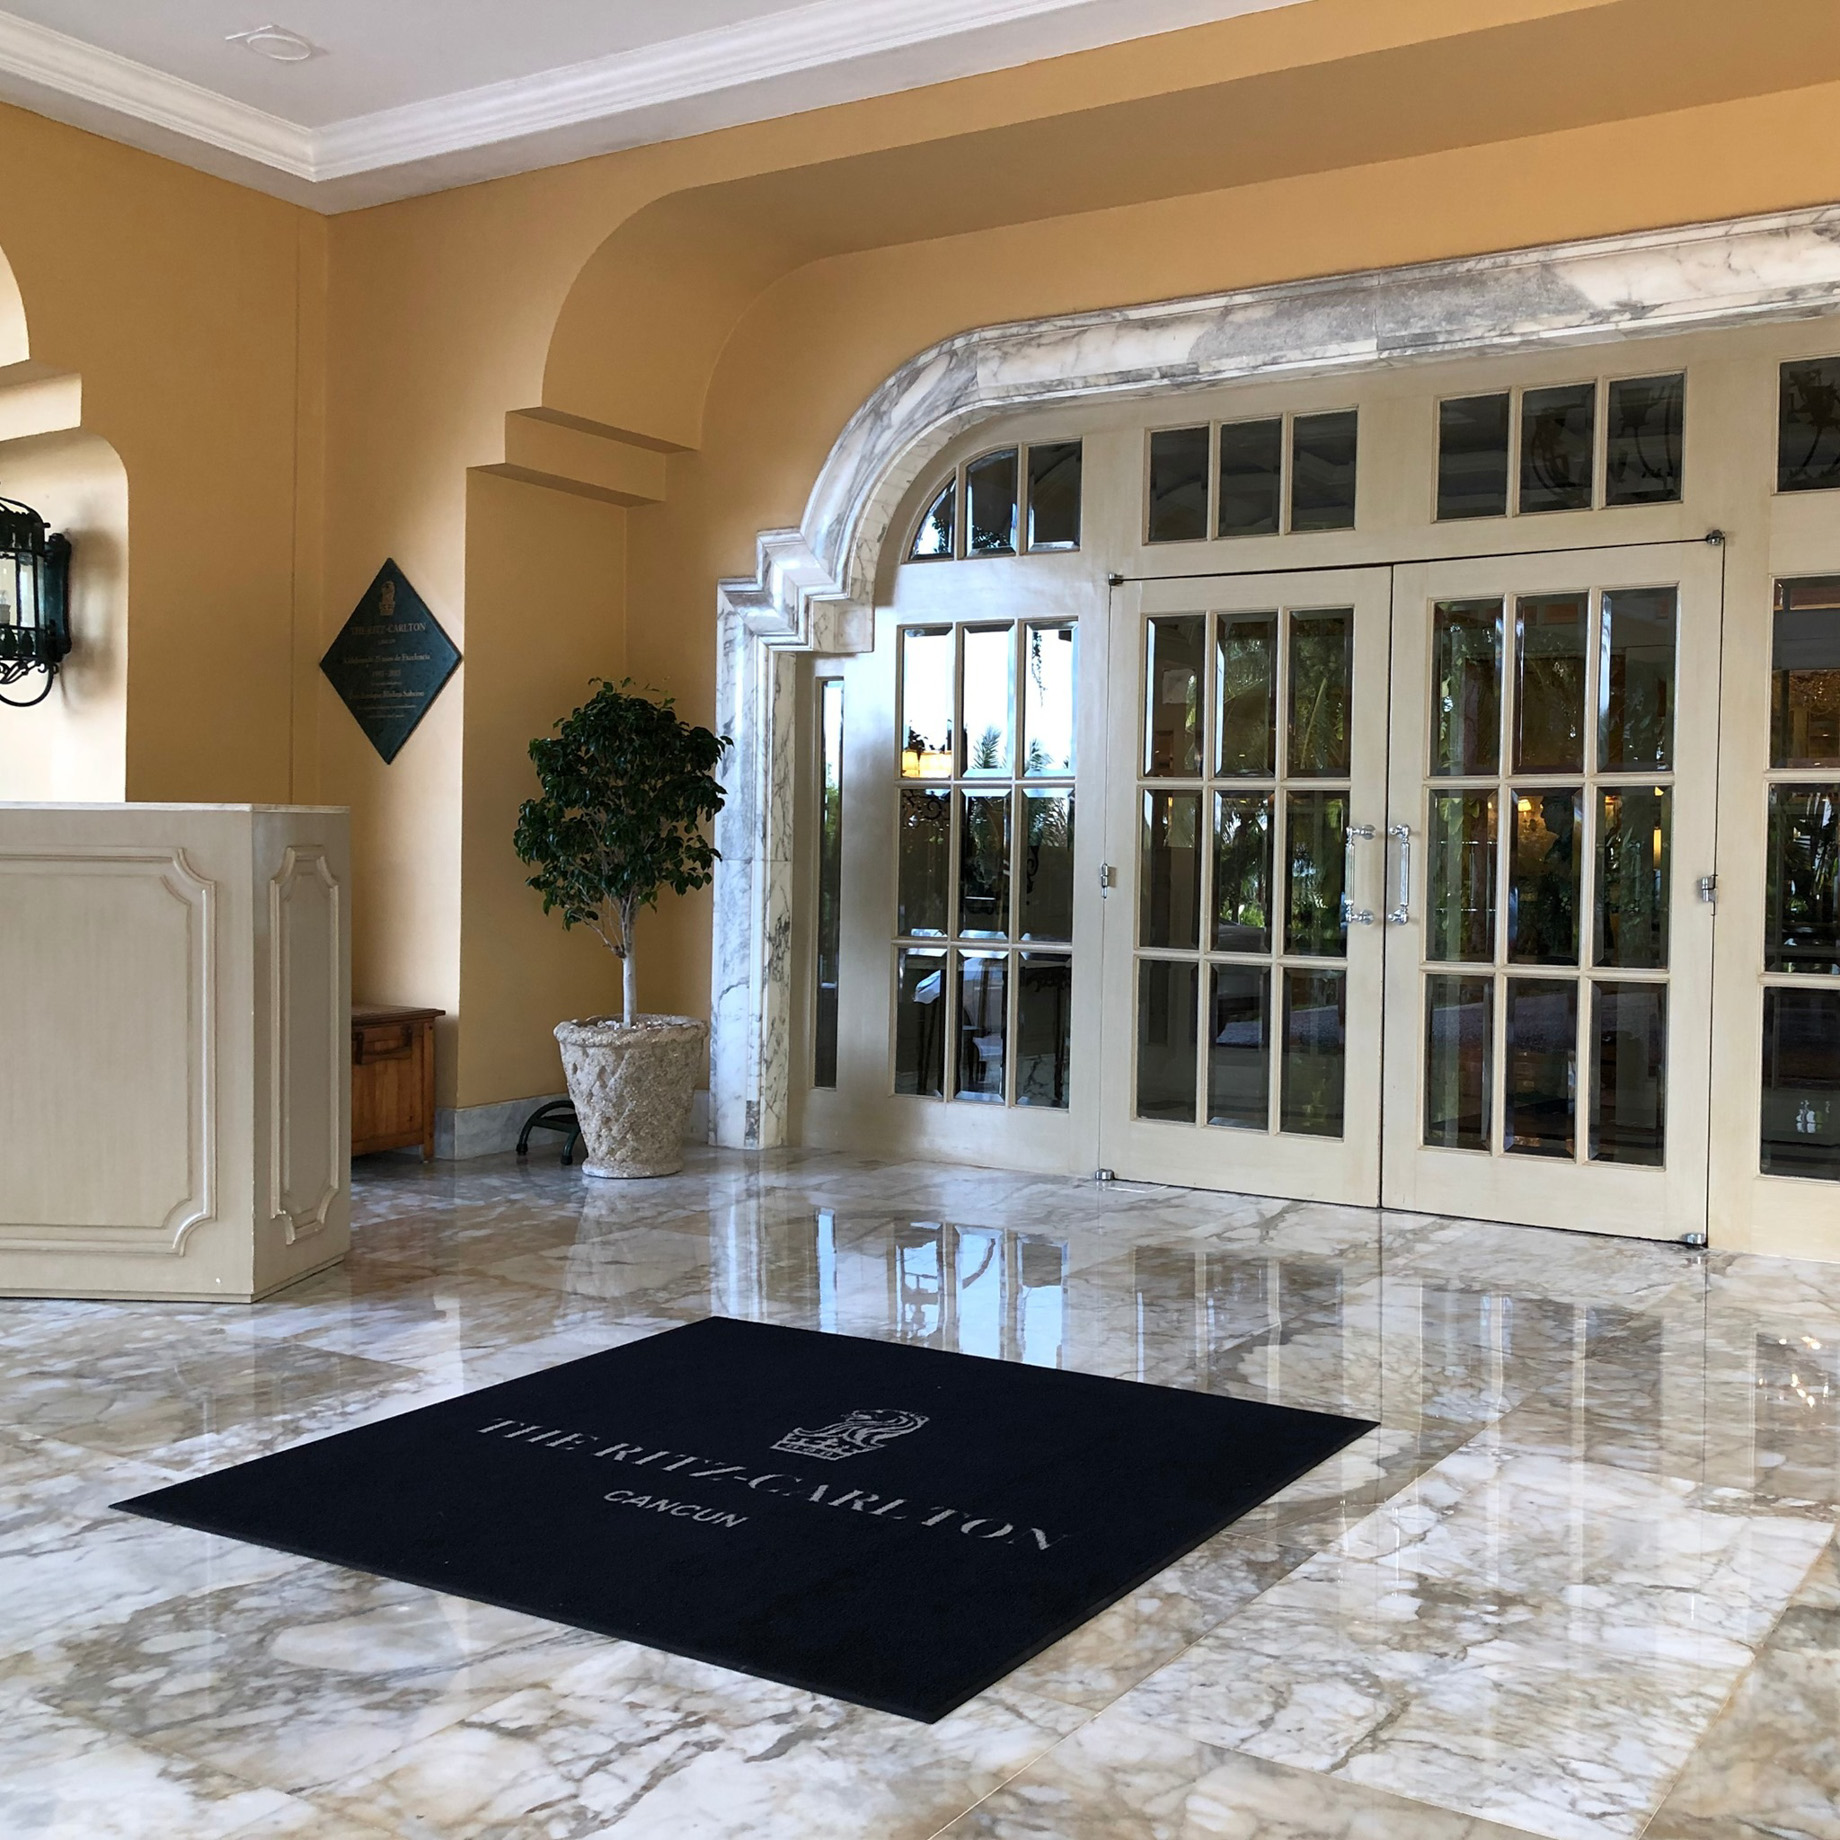 The Ritz-Carlton, Cancun Resort - Cancun, Mexico - Entrance